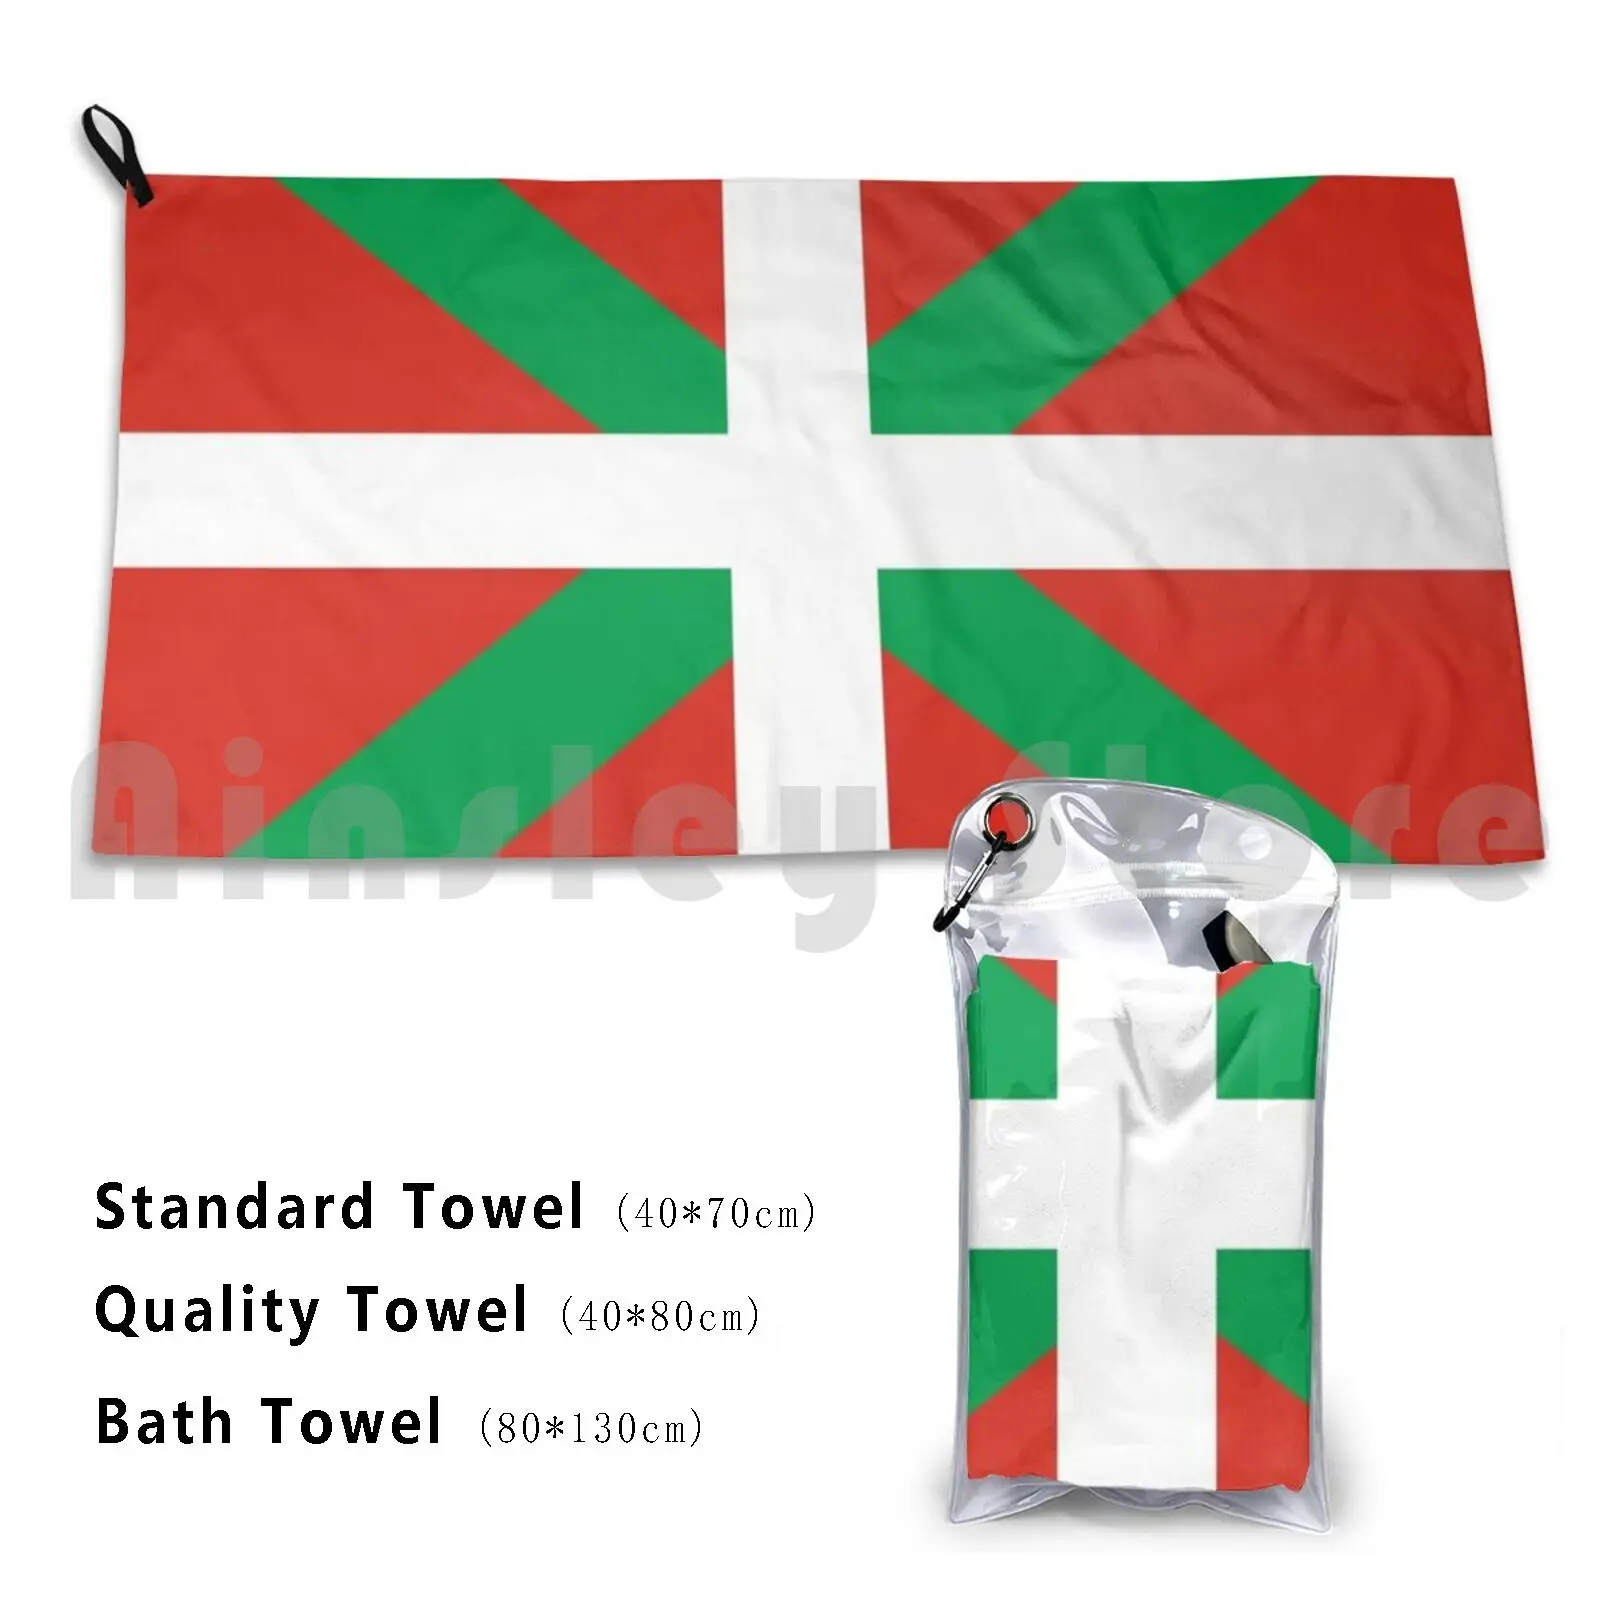 

Baskische Flagge Custom Towel Bath Towel Basque Euskal Herriao Euskadi Alava Biscay Guipuzcoa Araba Bizkaia